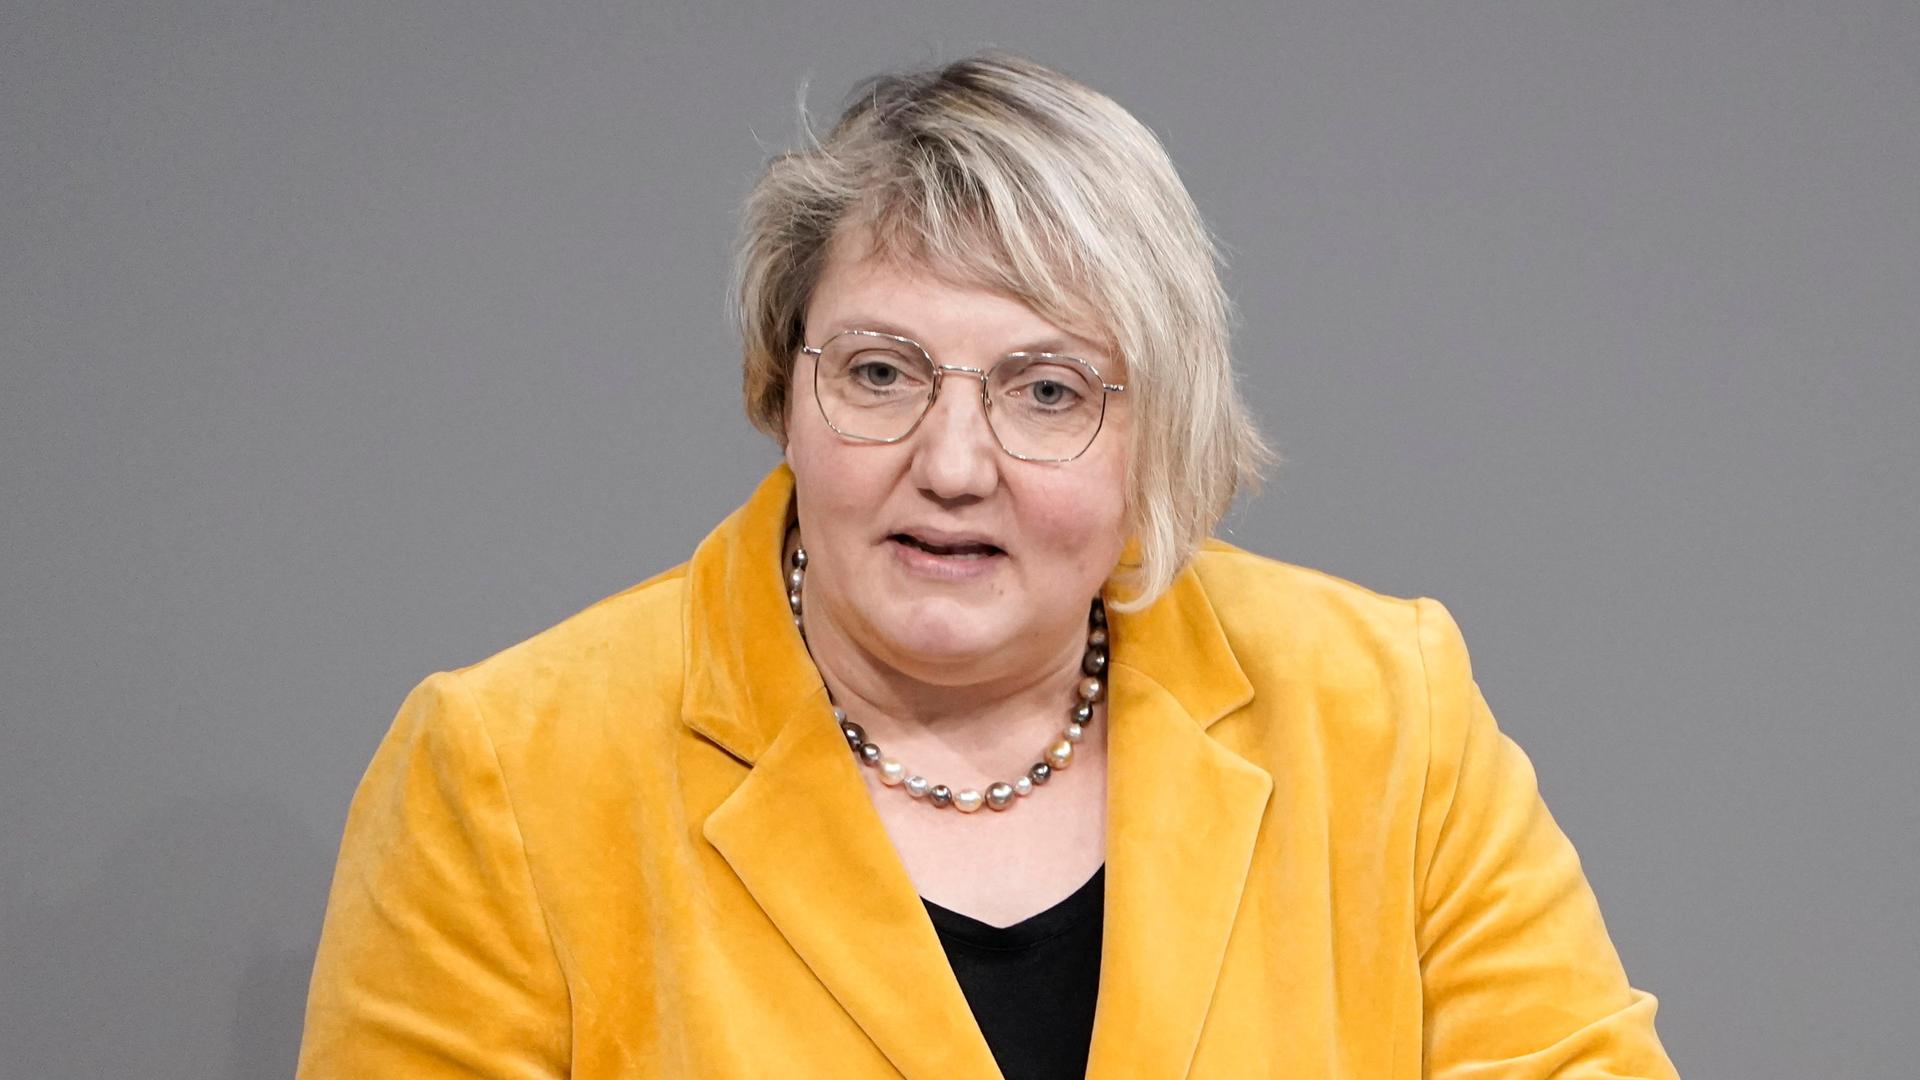 Katja Mast (SPD) in einem gelben Jacket, schaut in die Kamera.